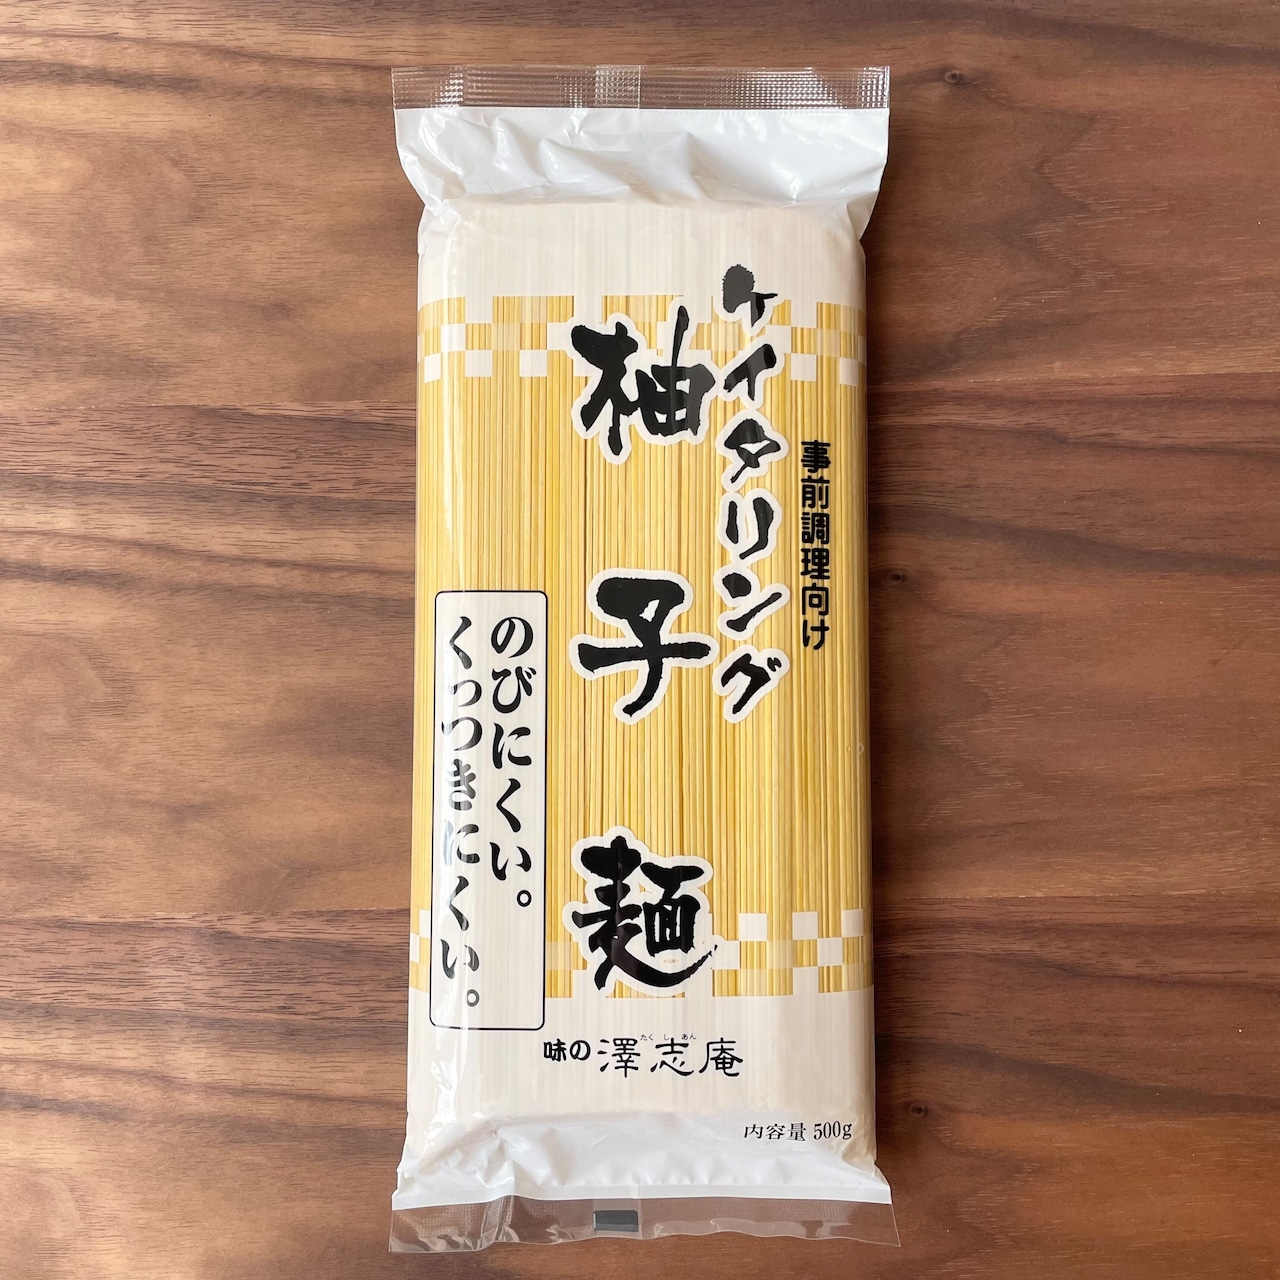 『ケイタリング柚子麺』20袋(120人前)